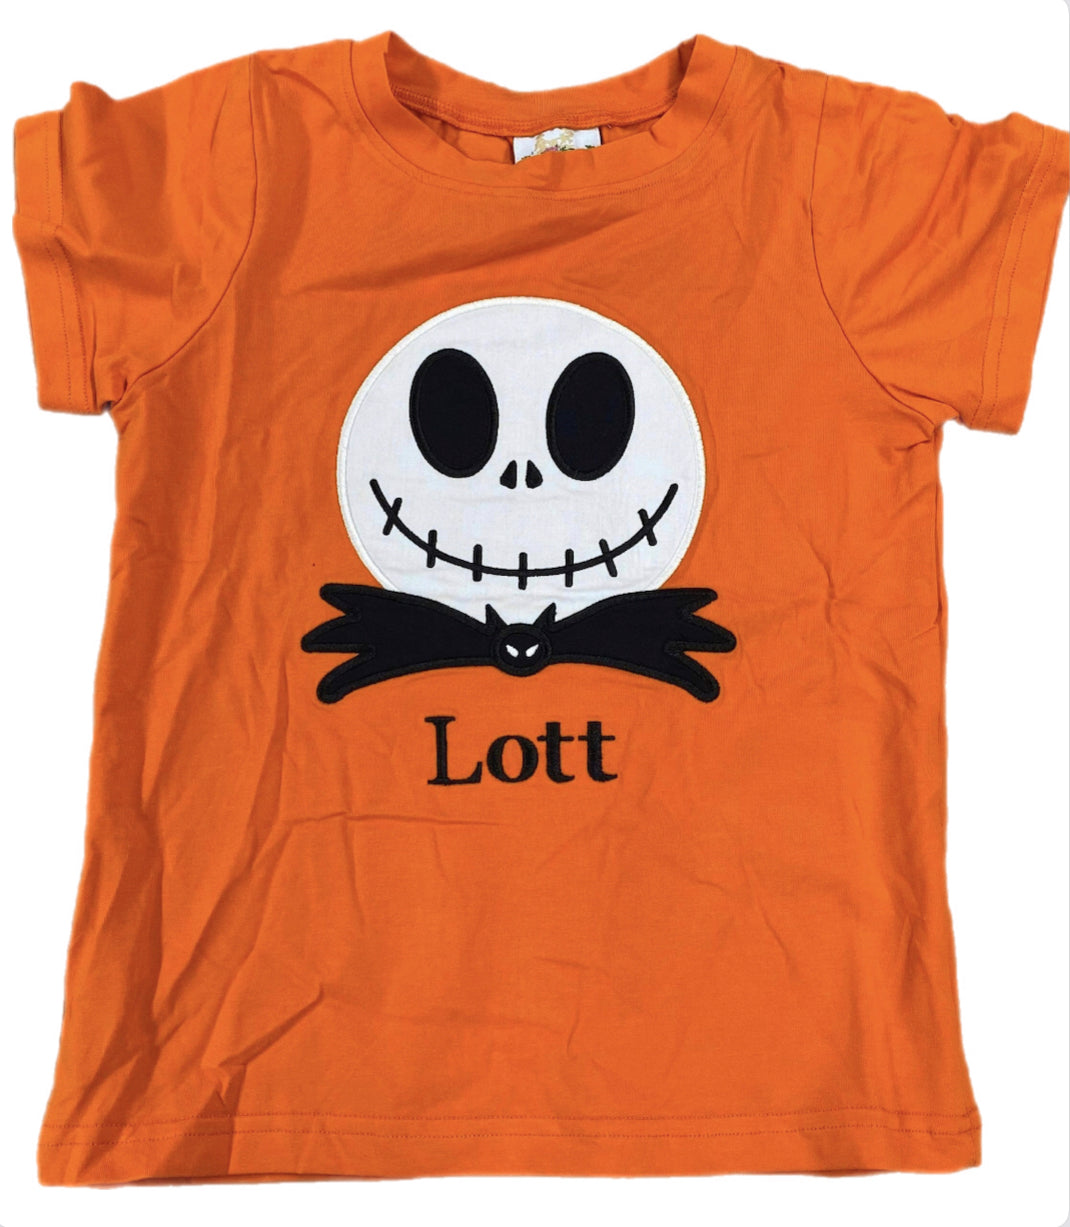 RTS: Boys Skeleton Face Shirt “Karter” “Otis” “Lott”